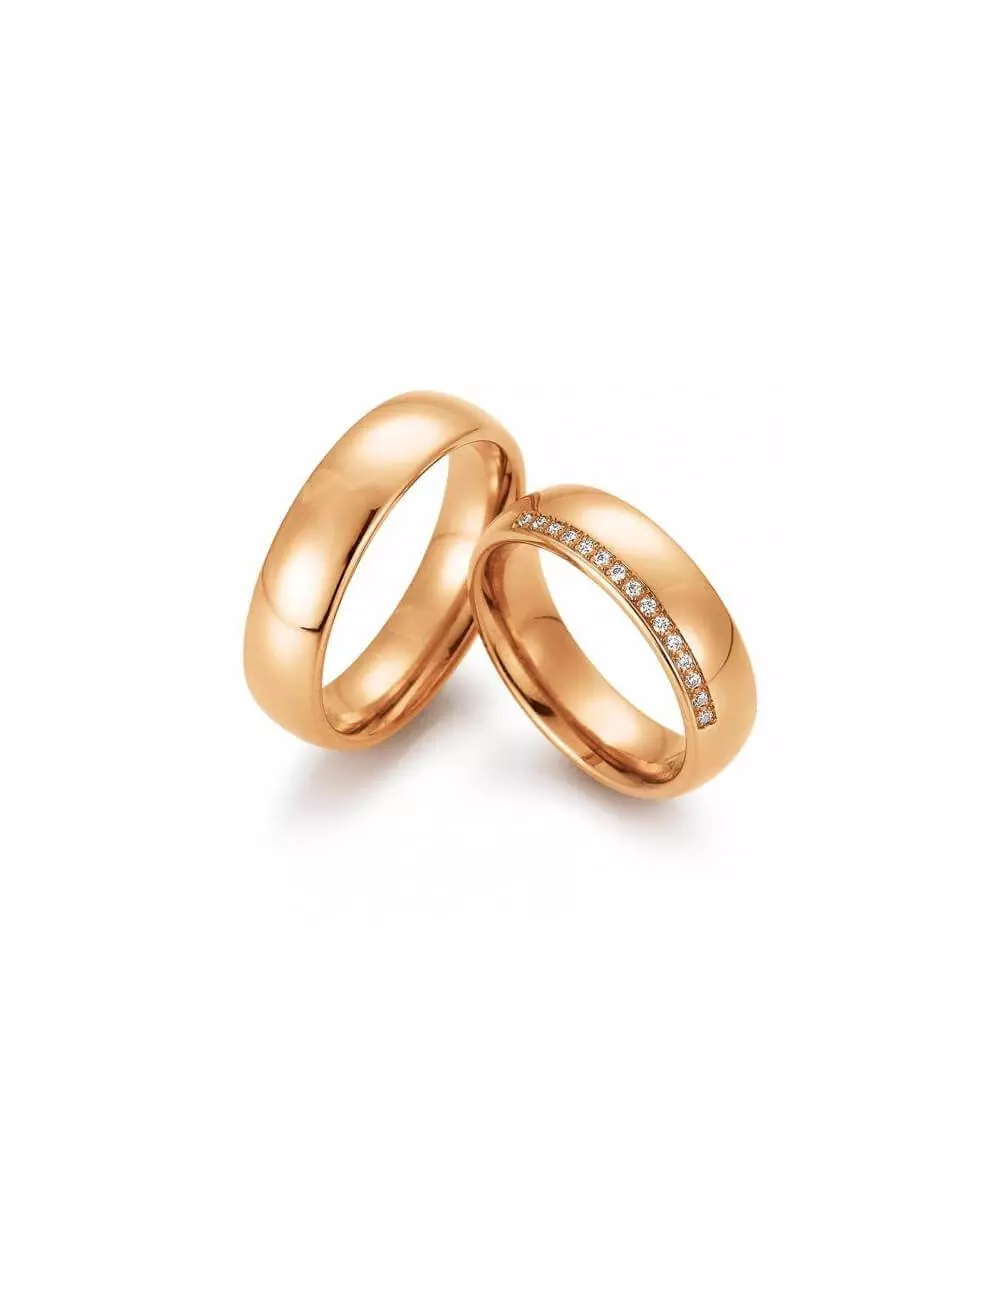 Klasikinis vestuvinis žiedas be deimantu - Švelnumas